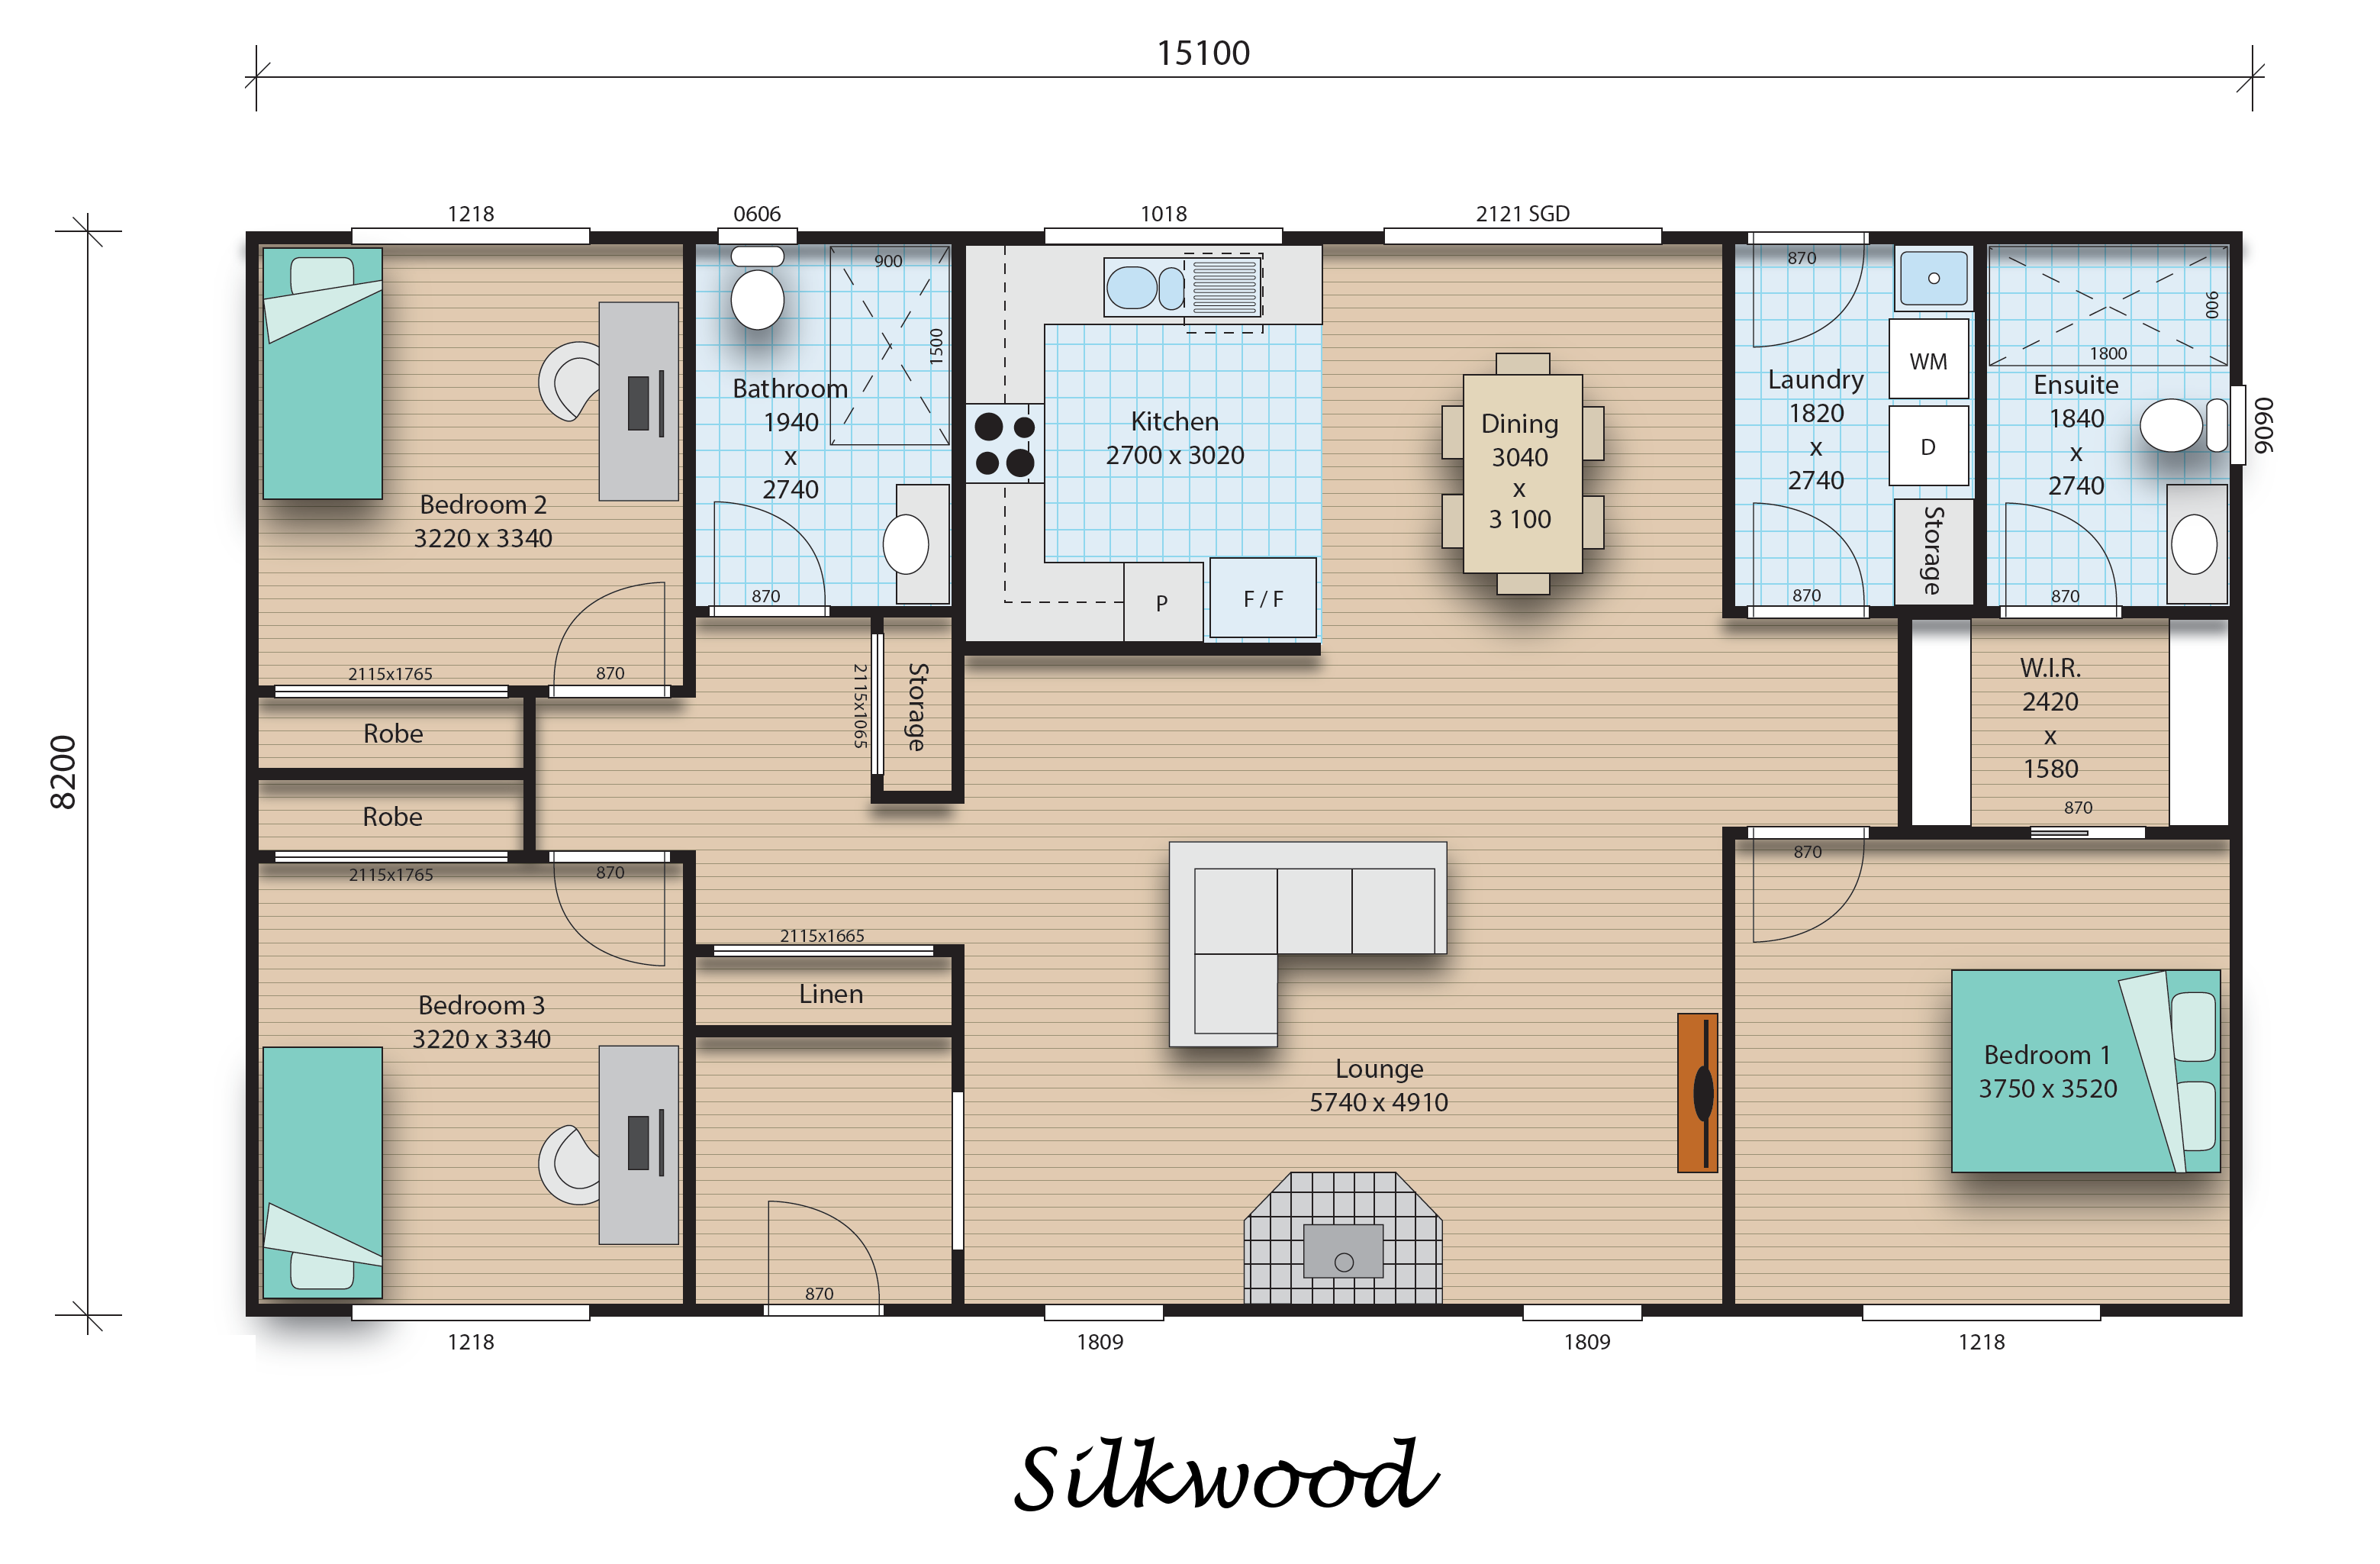 Silkwood floorplan image